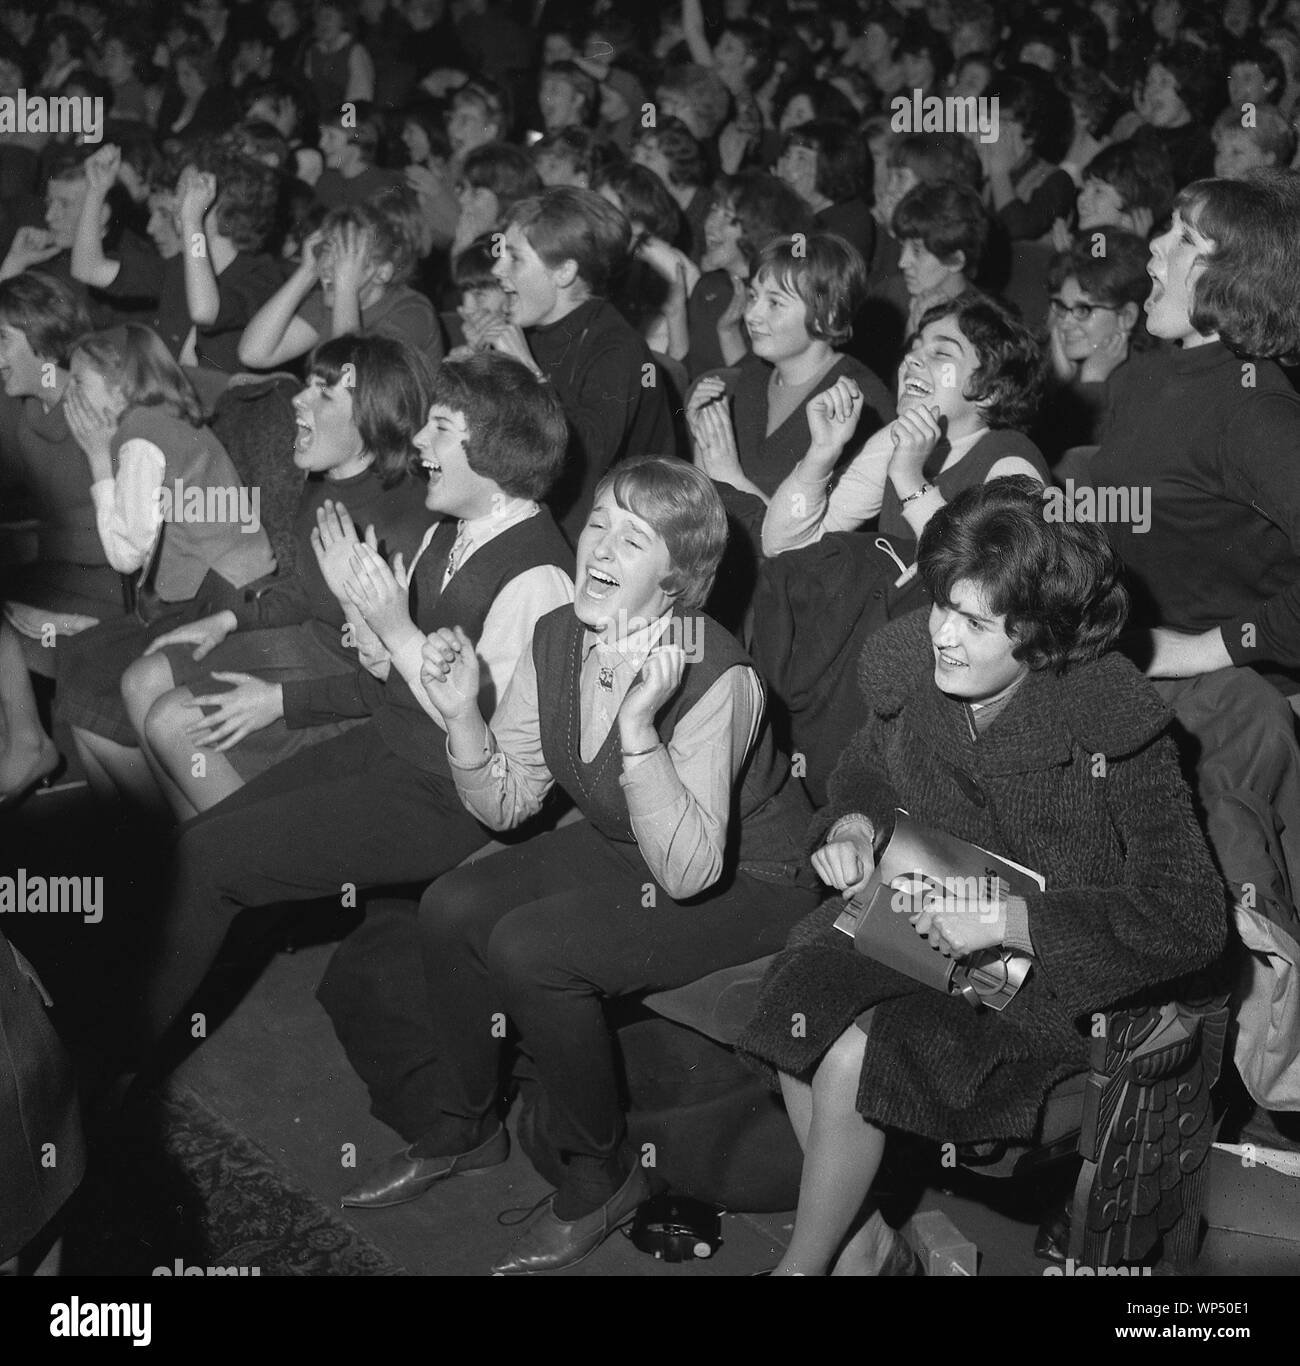 Beatles fans in Leeds 1963 Stock Photo